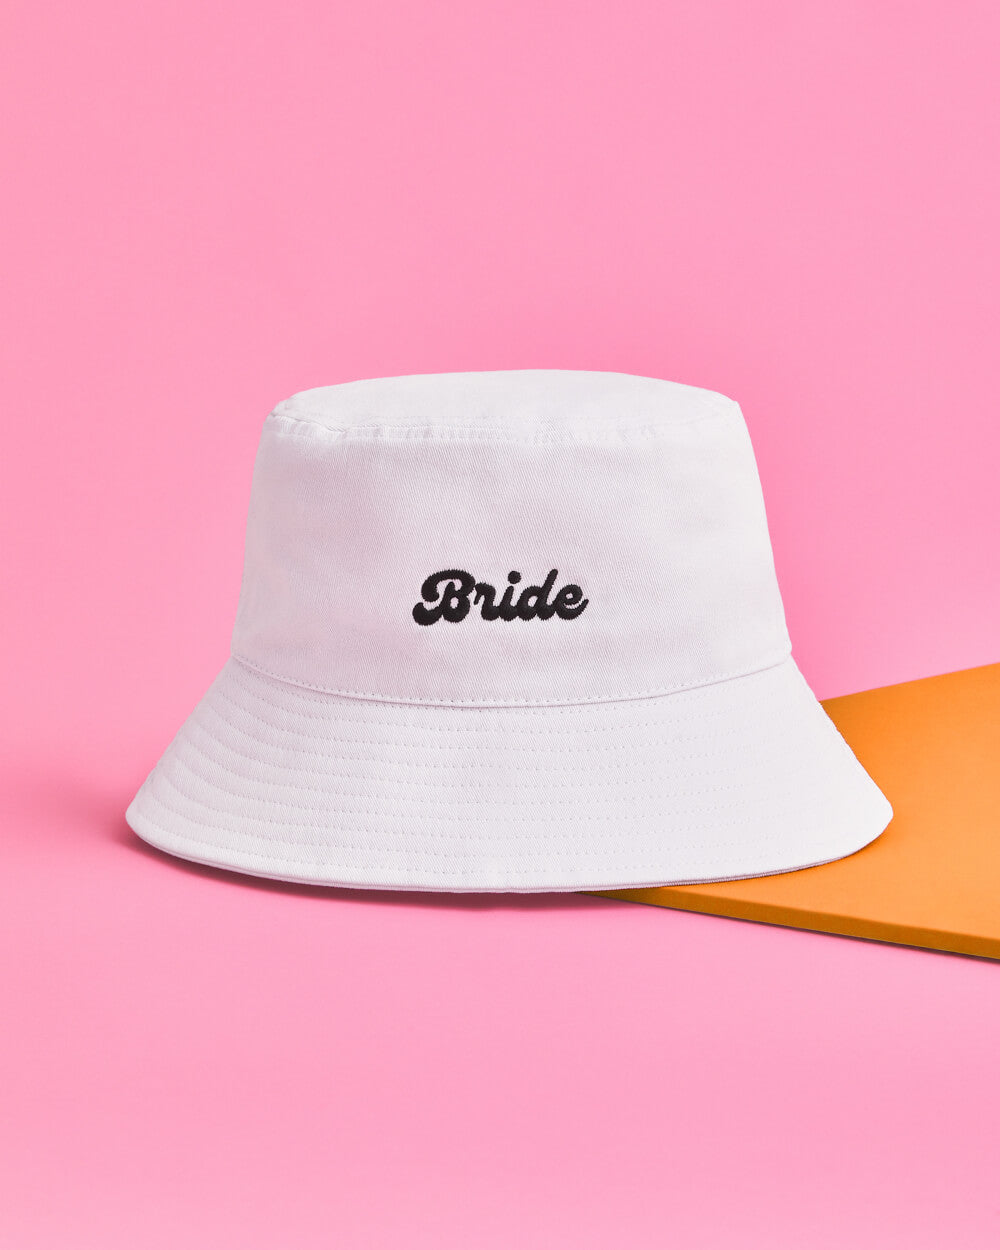 Bride Bucket Hat - embroidered cotton hat